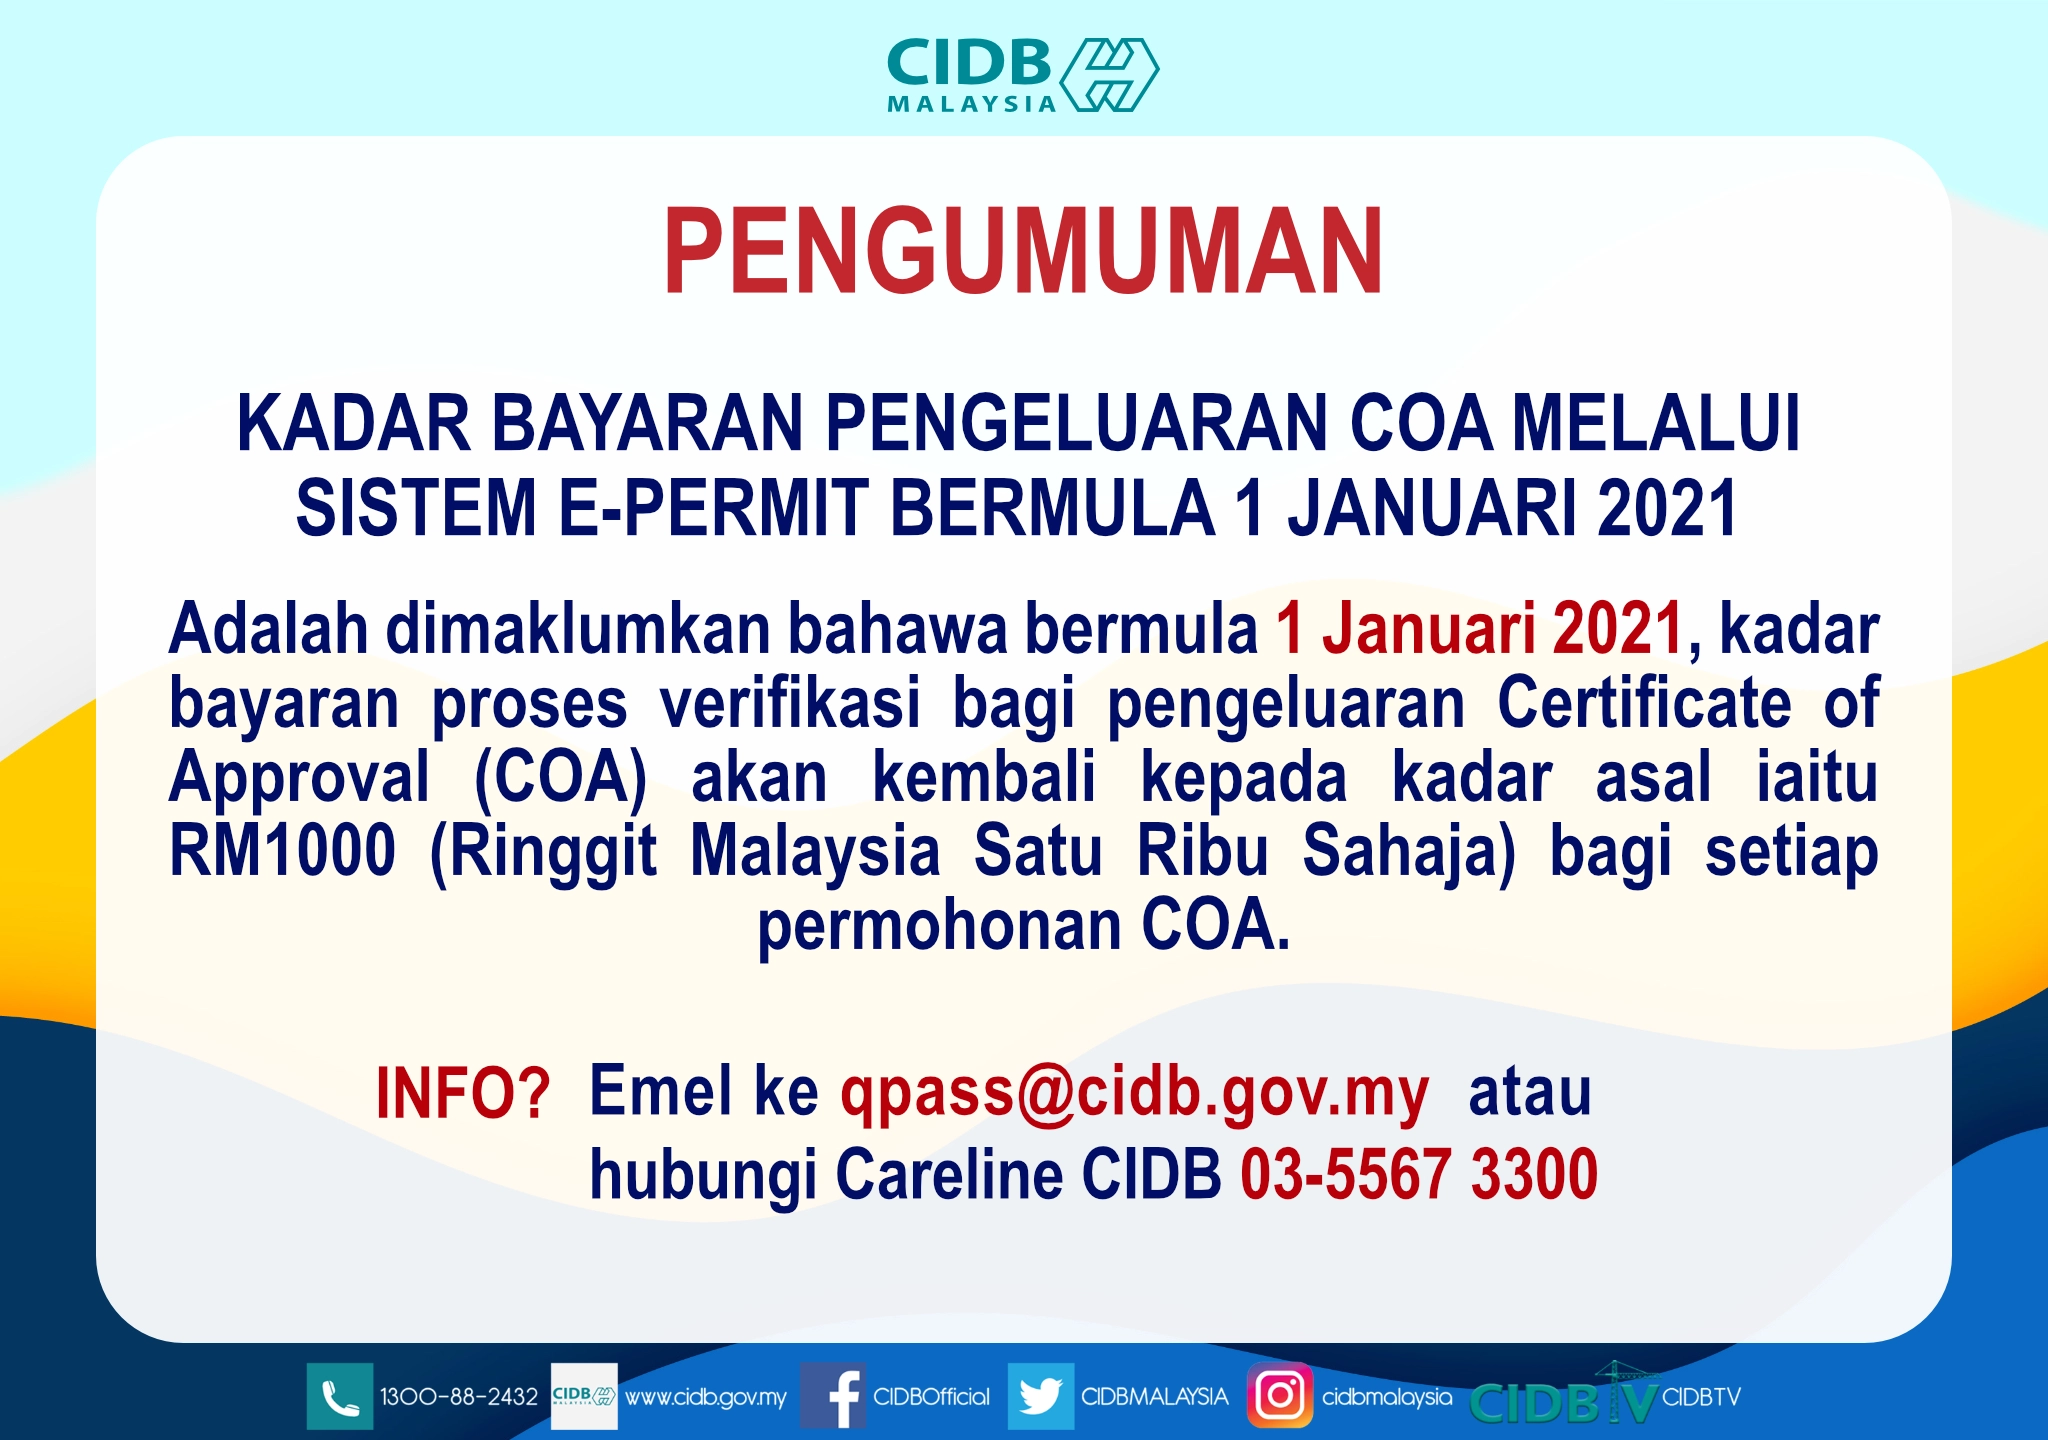 Kadar Bayaran Pengeluaran COA Melalui Sistem e-Permit Bermula 1 Januari 2021